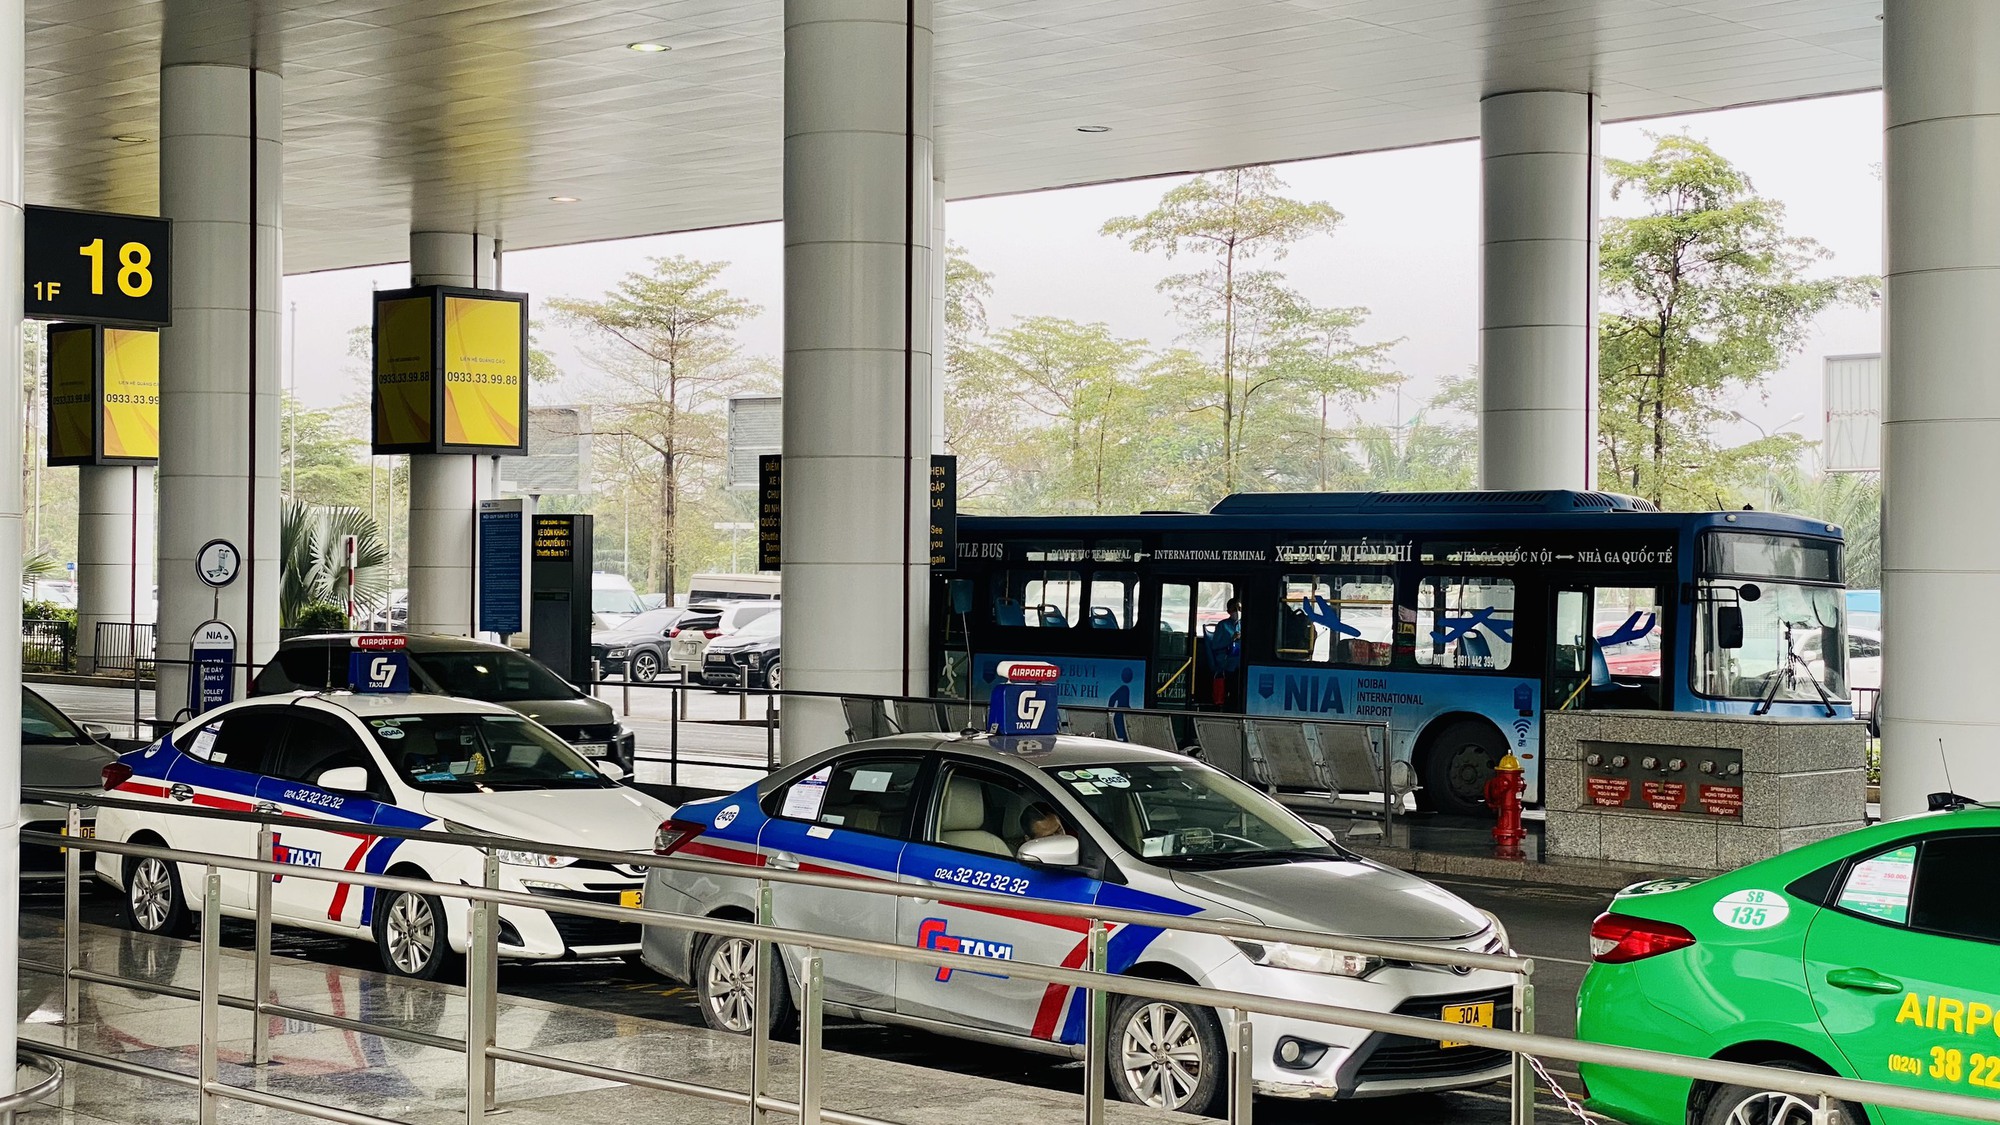 Khuyến cáo khách bay dùng xe nối chuyến miễn phí tại Nội Bài - Ảnh 6.